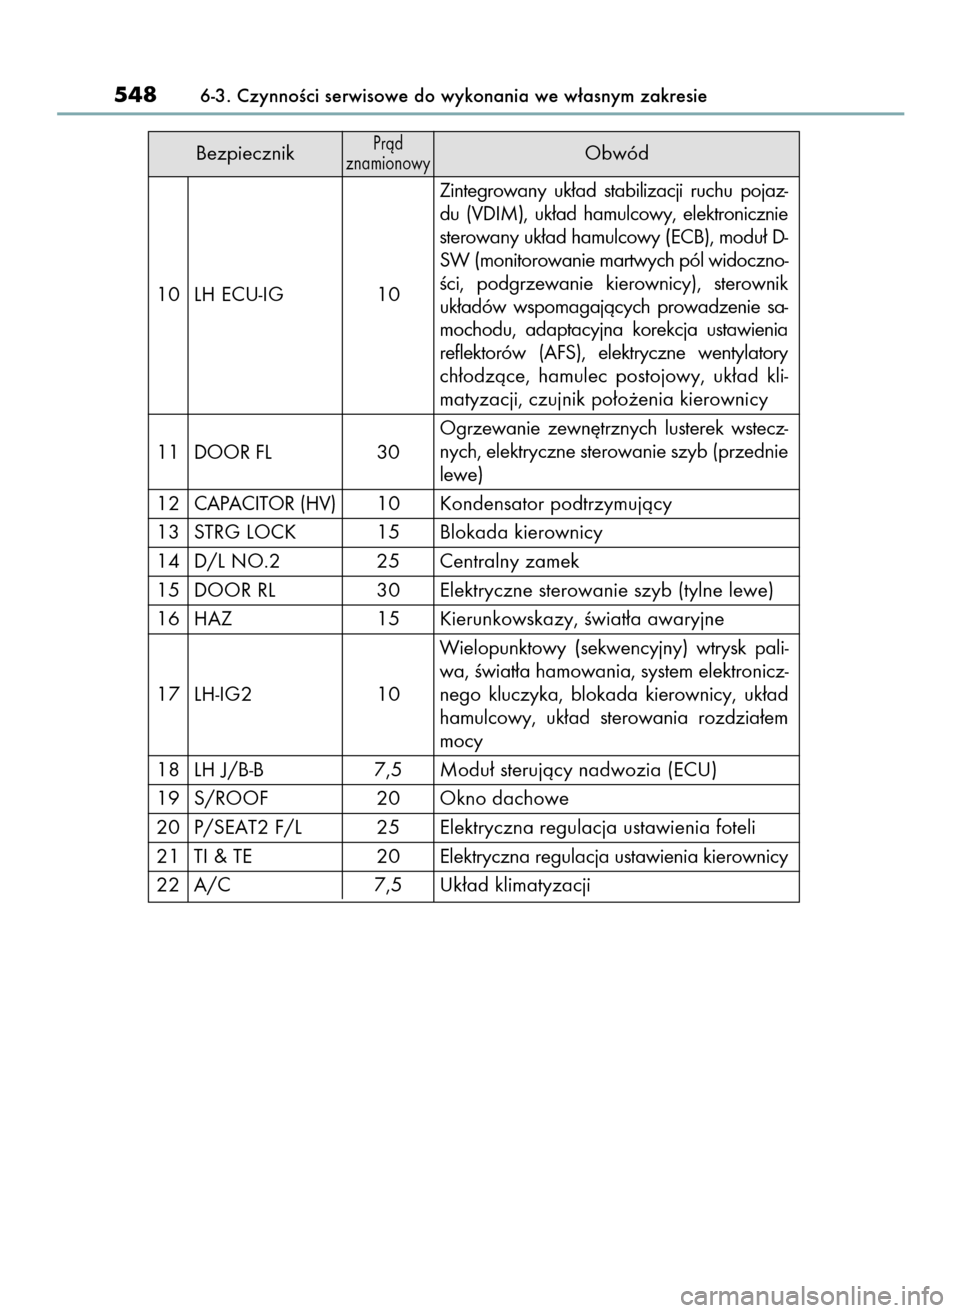 Lexus GS450h 2015  Instrukcja Obsługi (in Polish) BezpiecznikPràd 
znamionowyObwód
10 LH ECU-IG 10Zintegrowany  uk∏ad  stabilizacji  ruchu  pojaz-
du  (VDIM),  uk∏ad  hamulcowy,  elektronicznie
sterowany uk∏ad hamulcowy (ECB), modu∏ D-
SW (